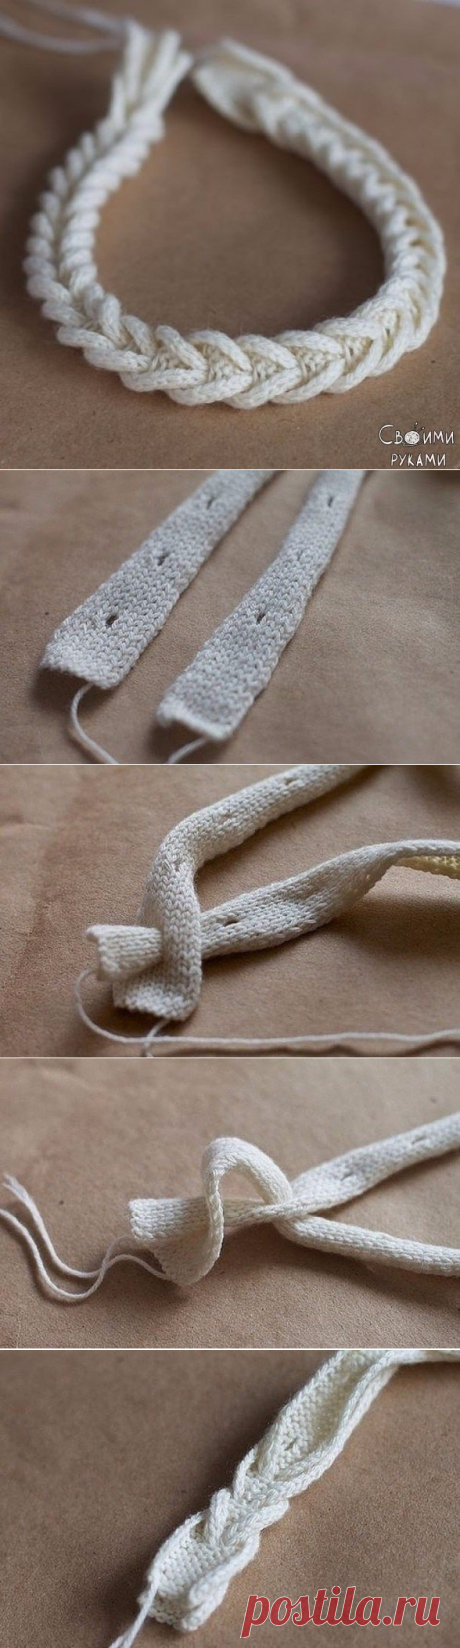 Интересный способ сделать вязаную косичку для отделки.